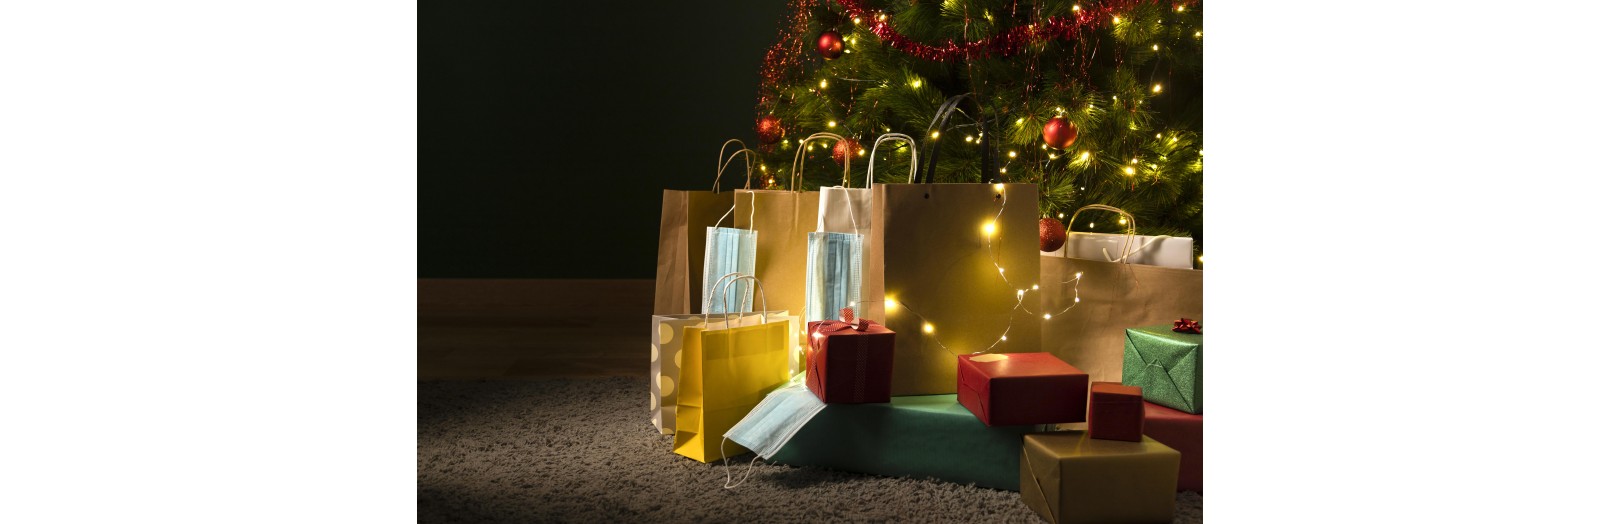 Surviving the Christmas Gifting Rush